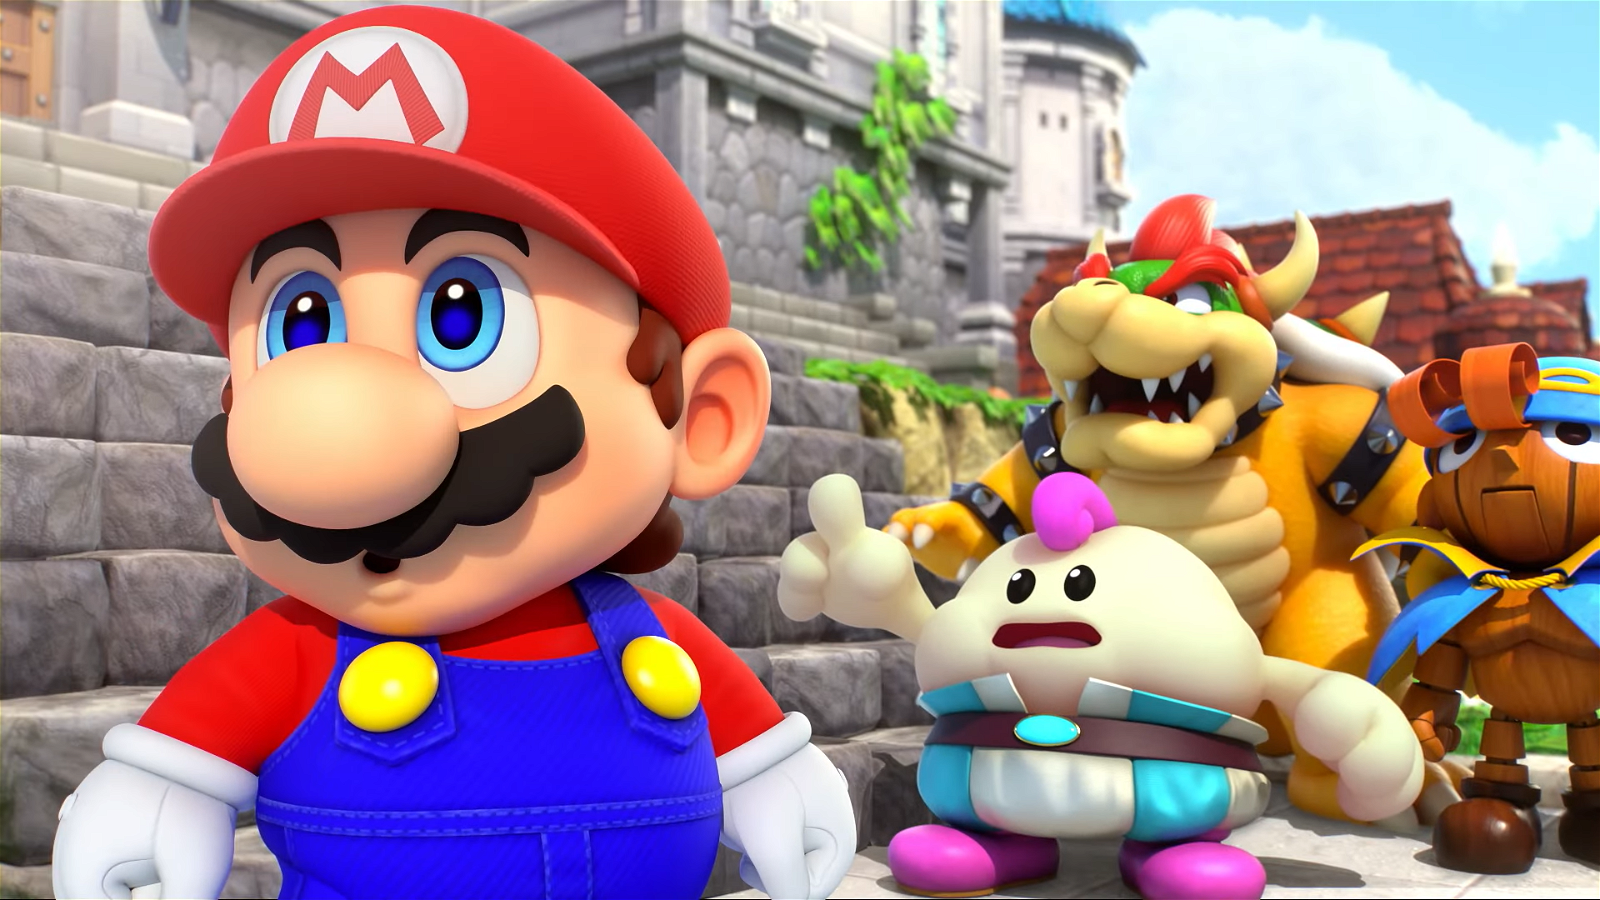 Screengrab from Super Mario RPG Trailer